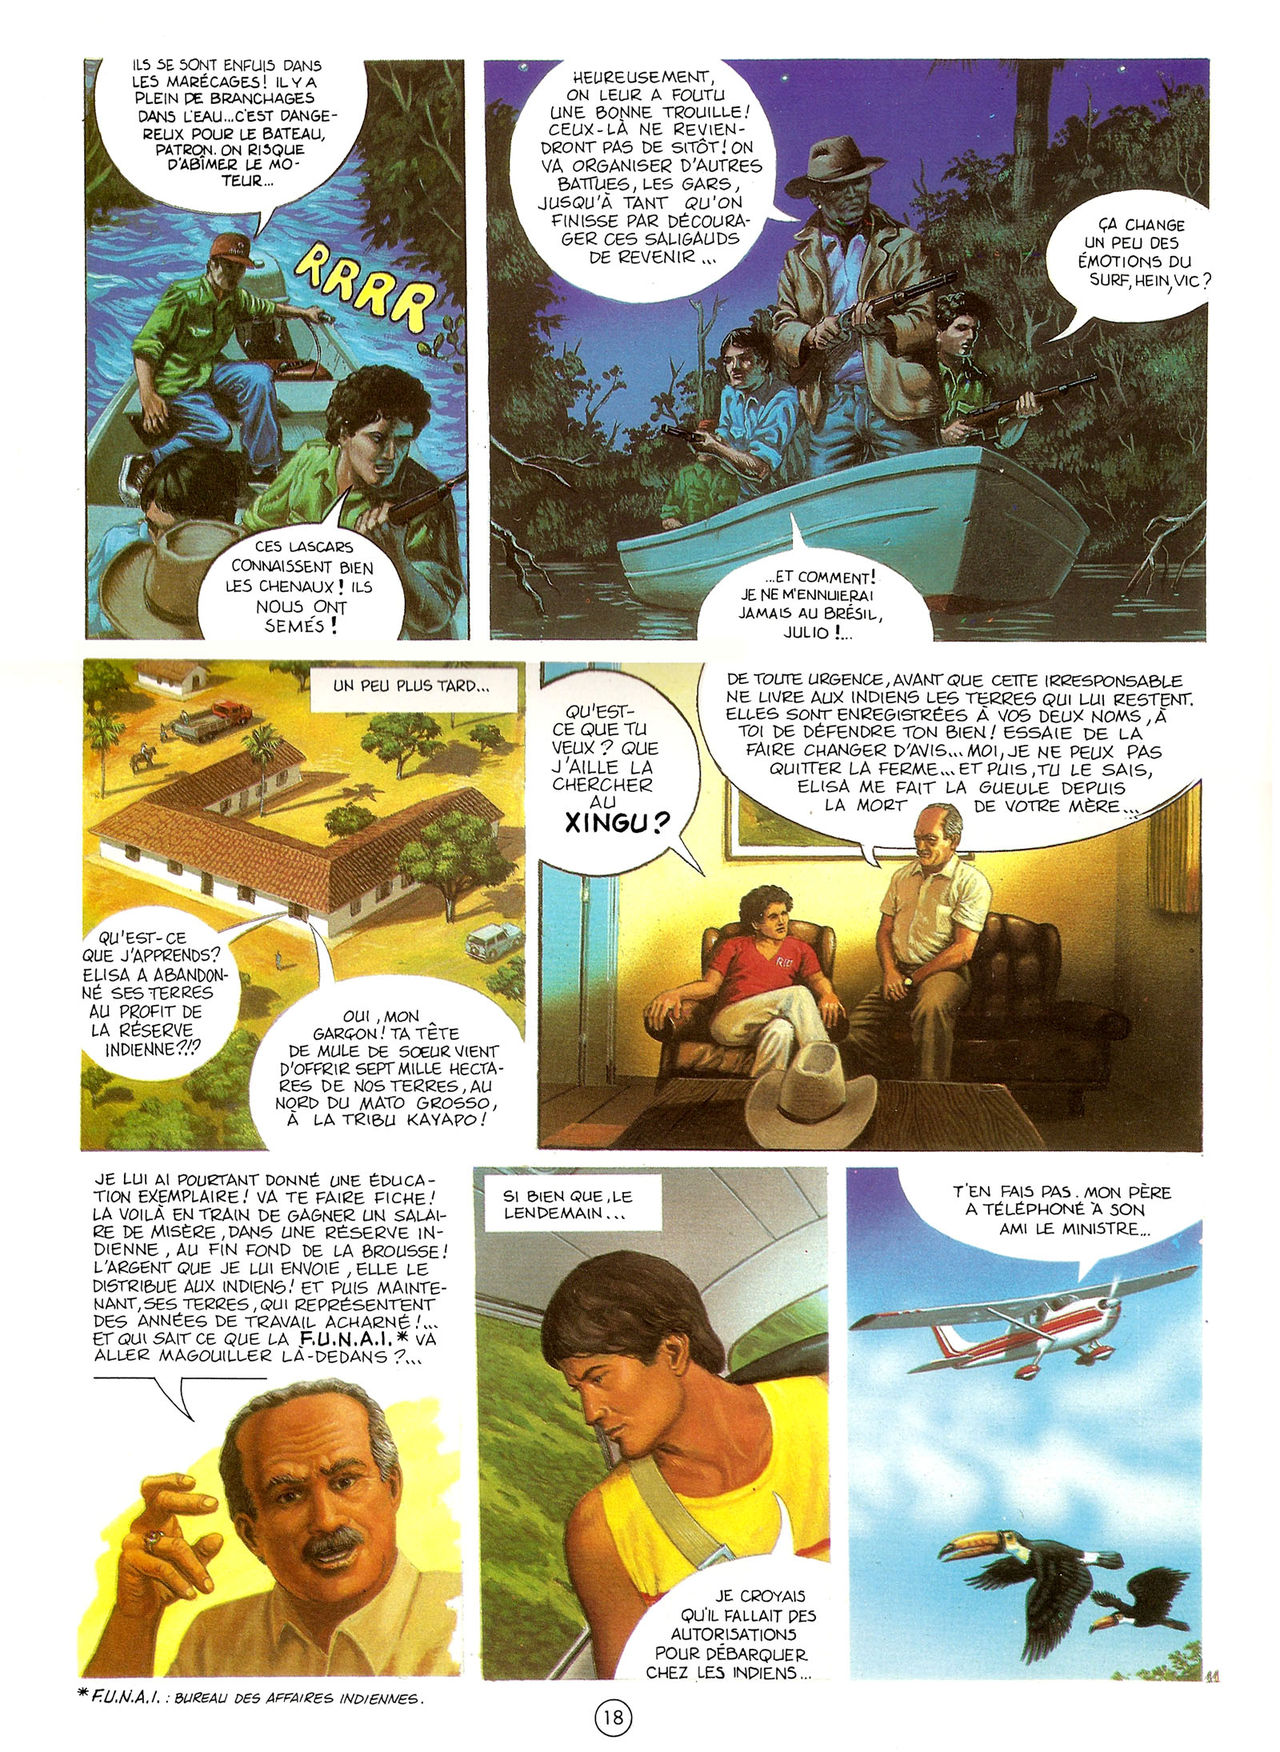 Les Aventures de Vic Voyage 05 - Brazil! numero d'image 18